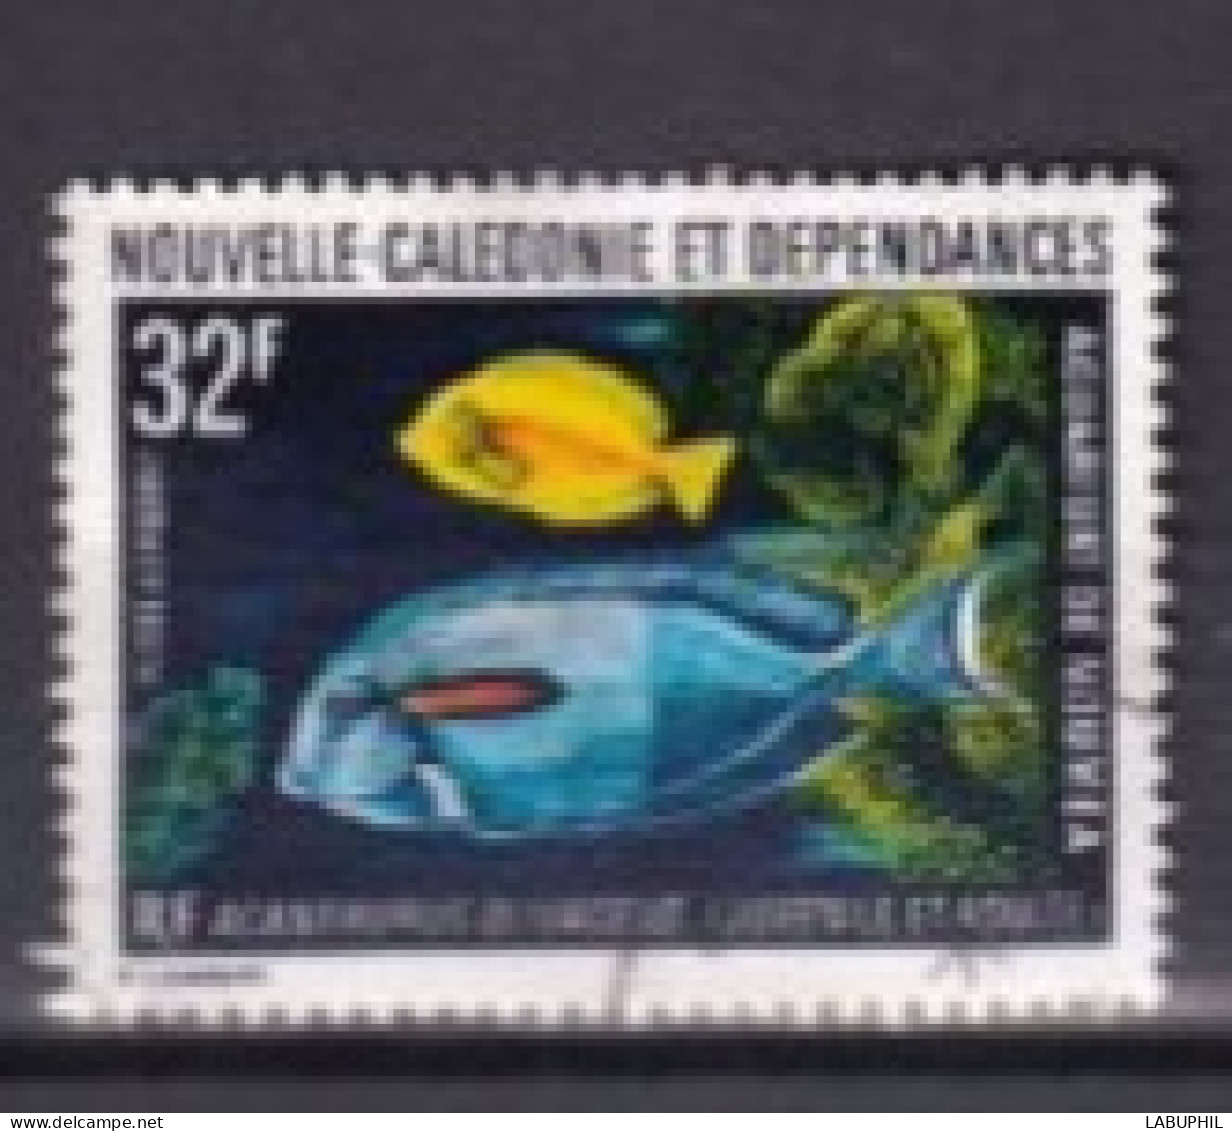 NOUVELLE CALEDONIE Dispersion D'une Collection Oblitéré Used  1973 - Oblitérés